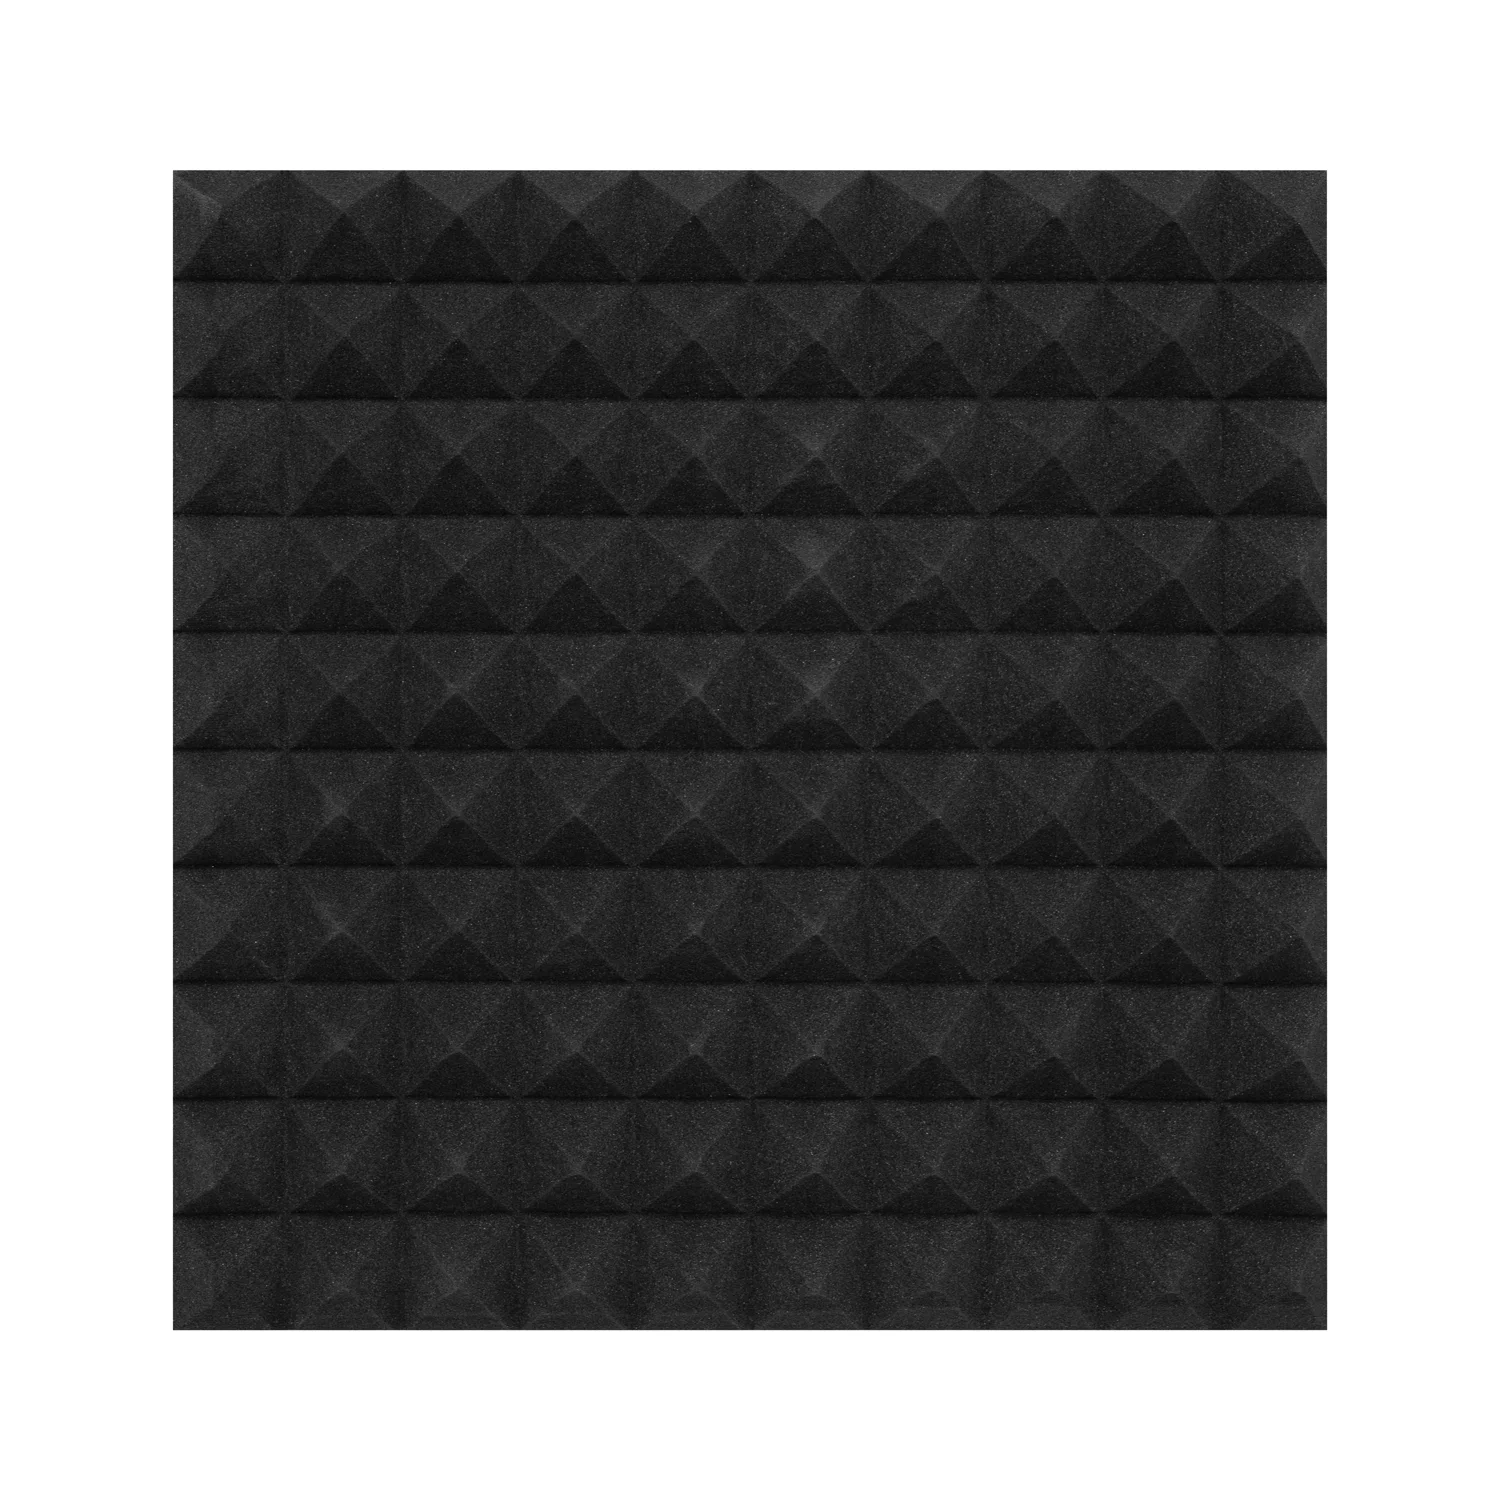 10db Hangelnyelő szivacs, 50x50cm, piramis, fekete, öntapadós